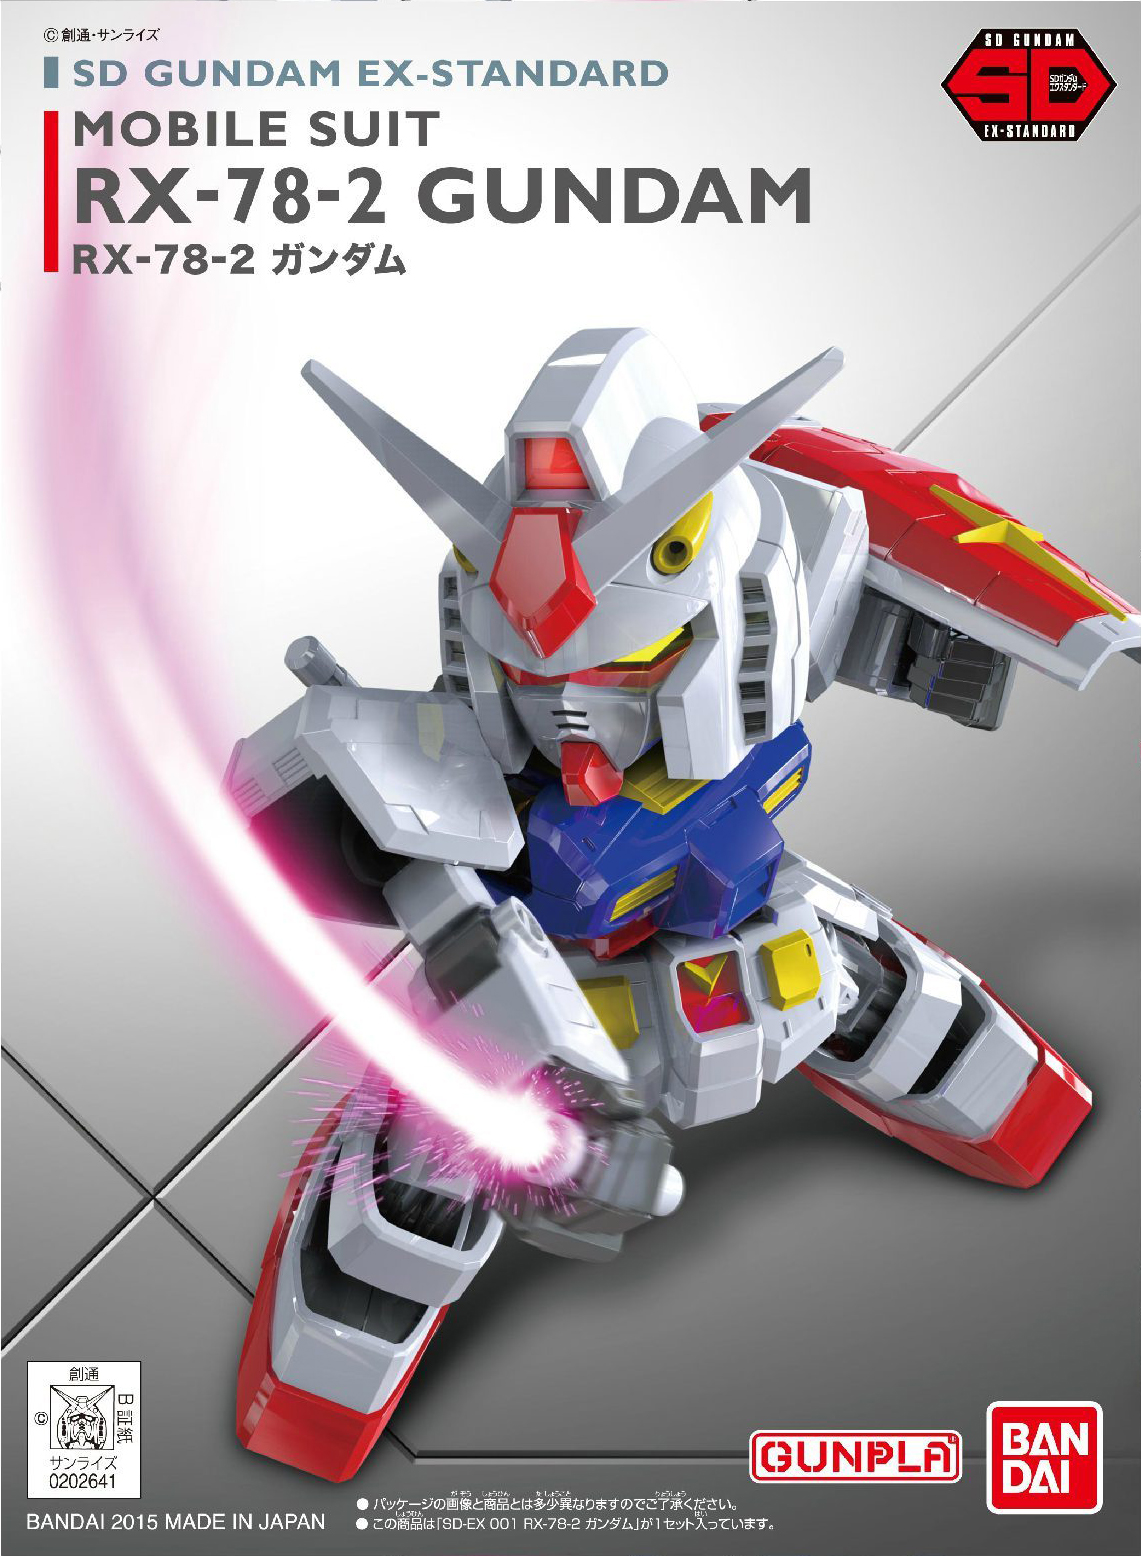 SD GUNDAM EX-STANDARD RX-78-2 Gundam: ADDED Box Art, Official 